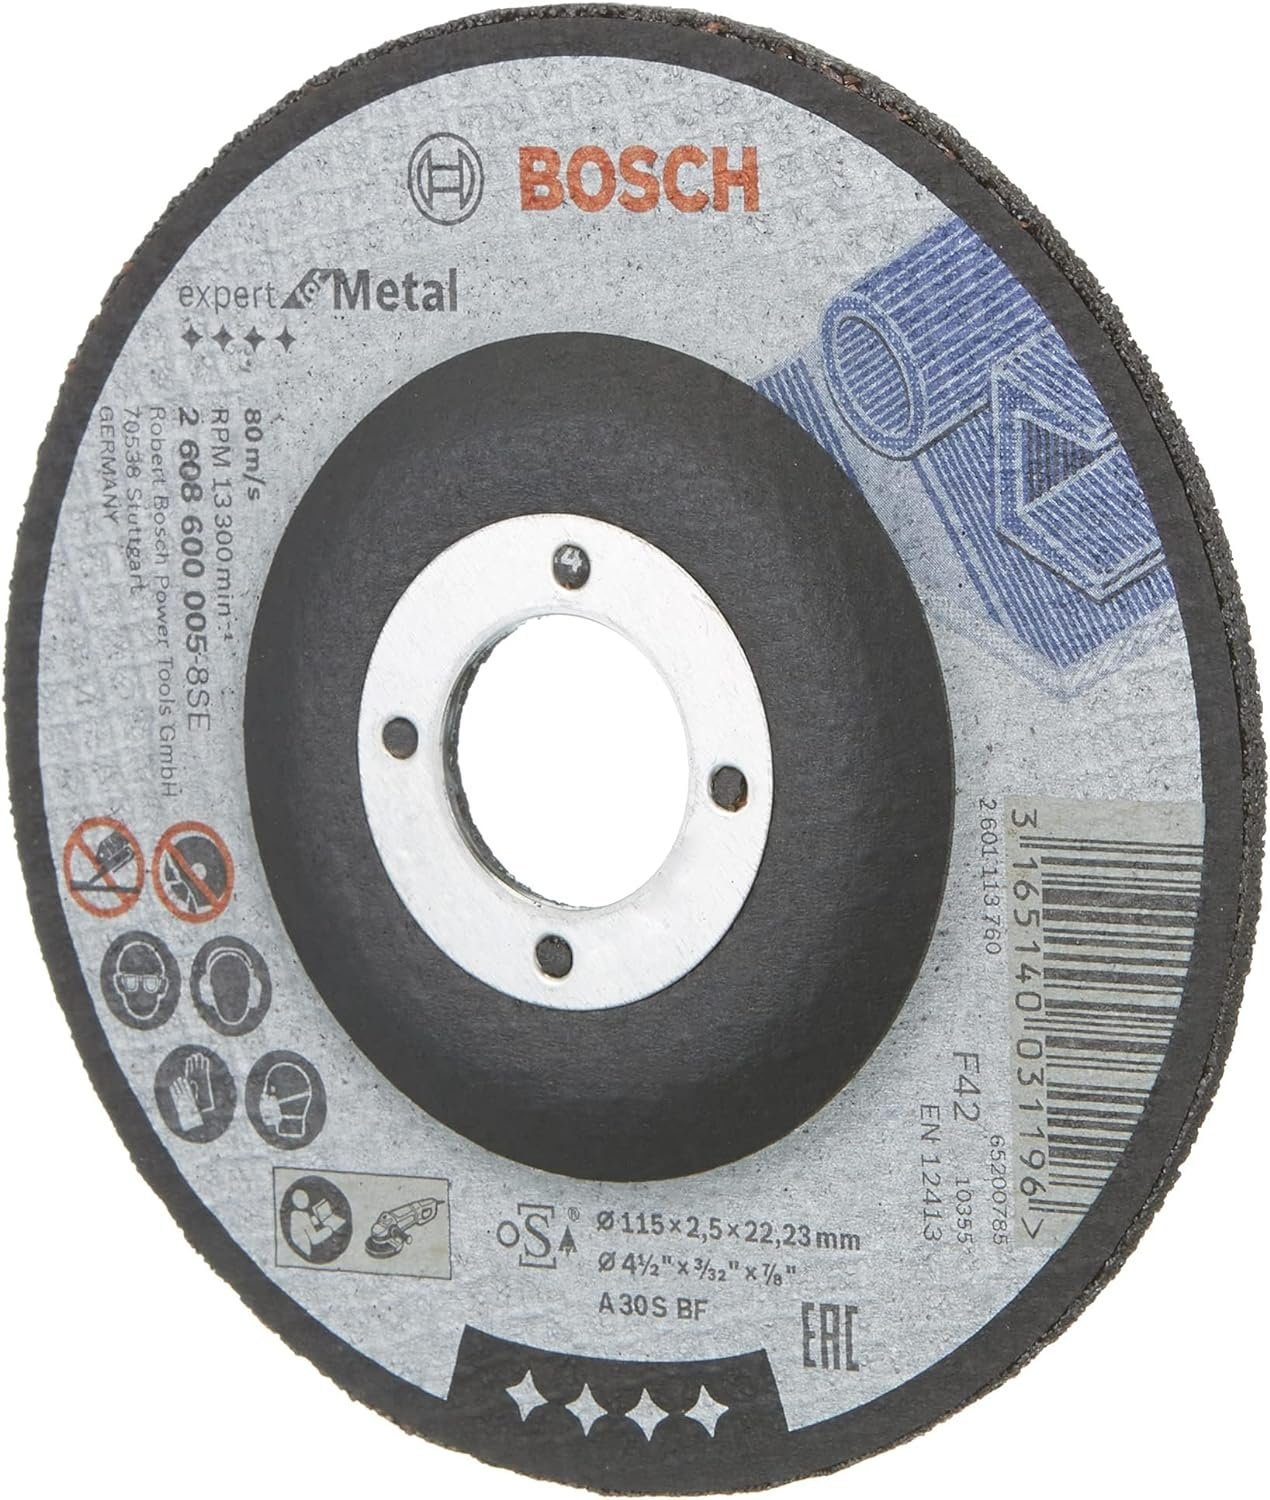 BOSCH mm, BF, Expert 125 Bohrfutter 30 Bosch A S for mm Ø 2.5 gekröpft Trennscheibe